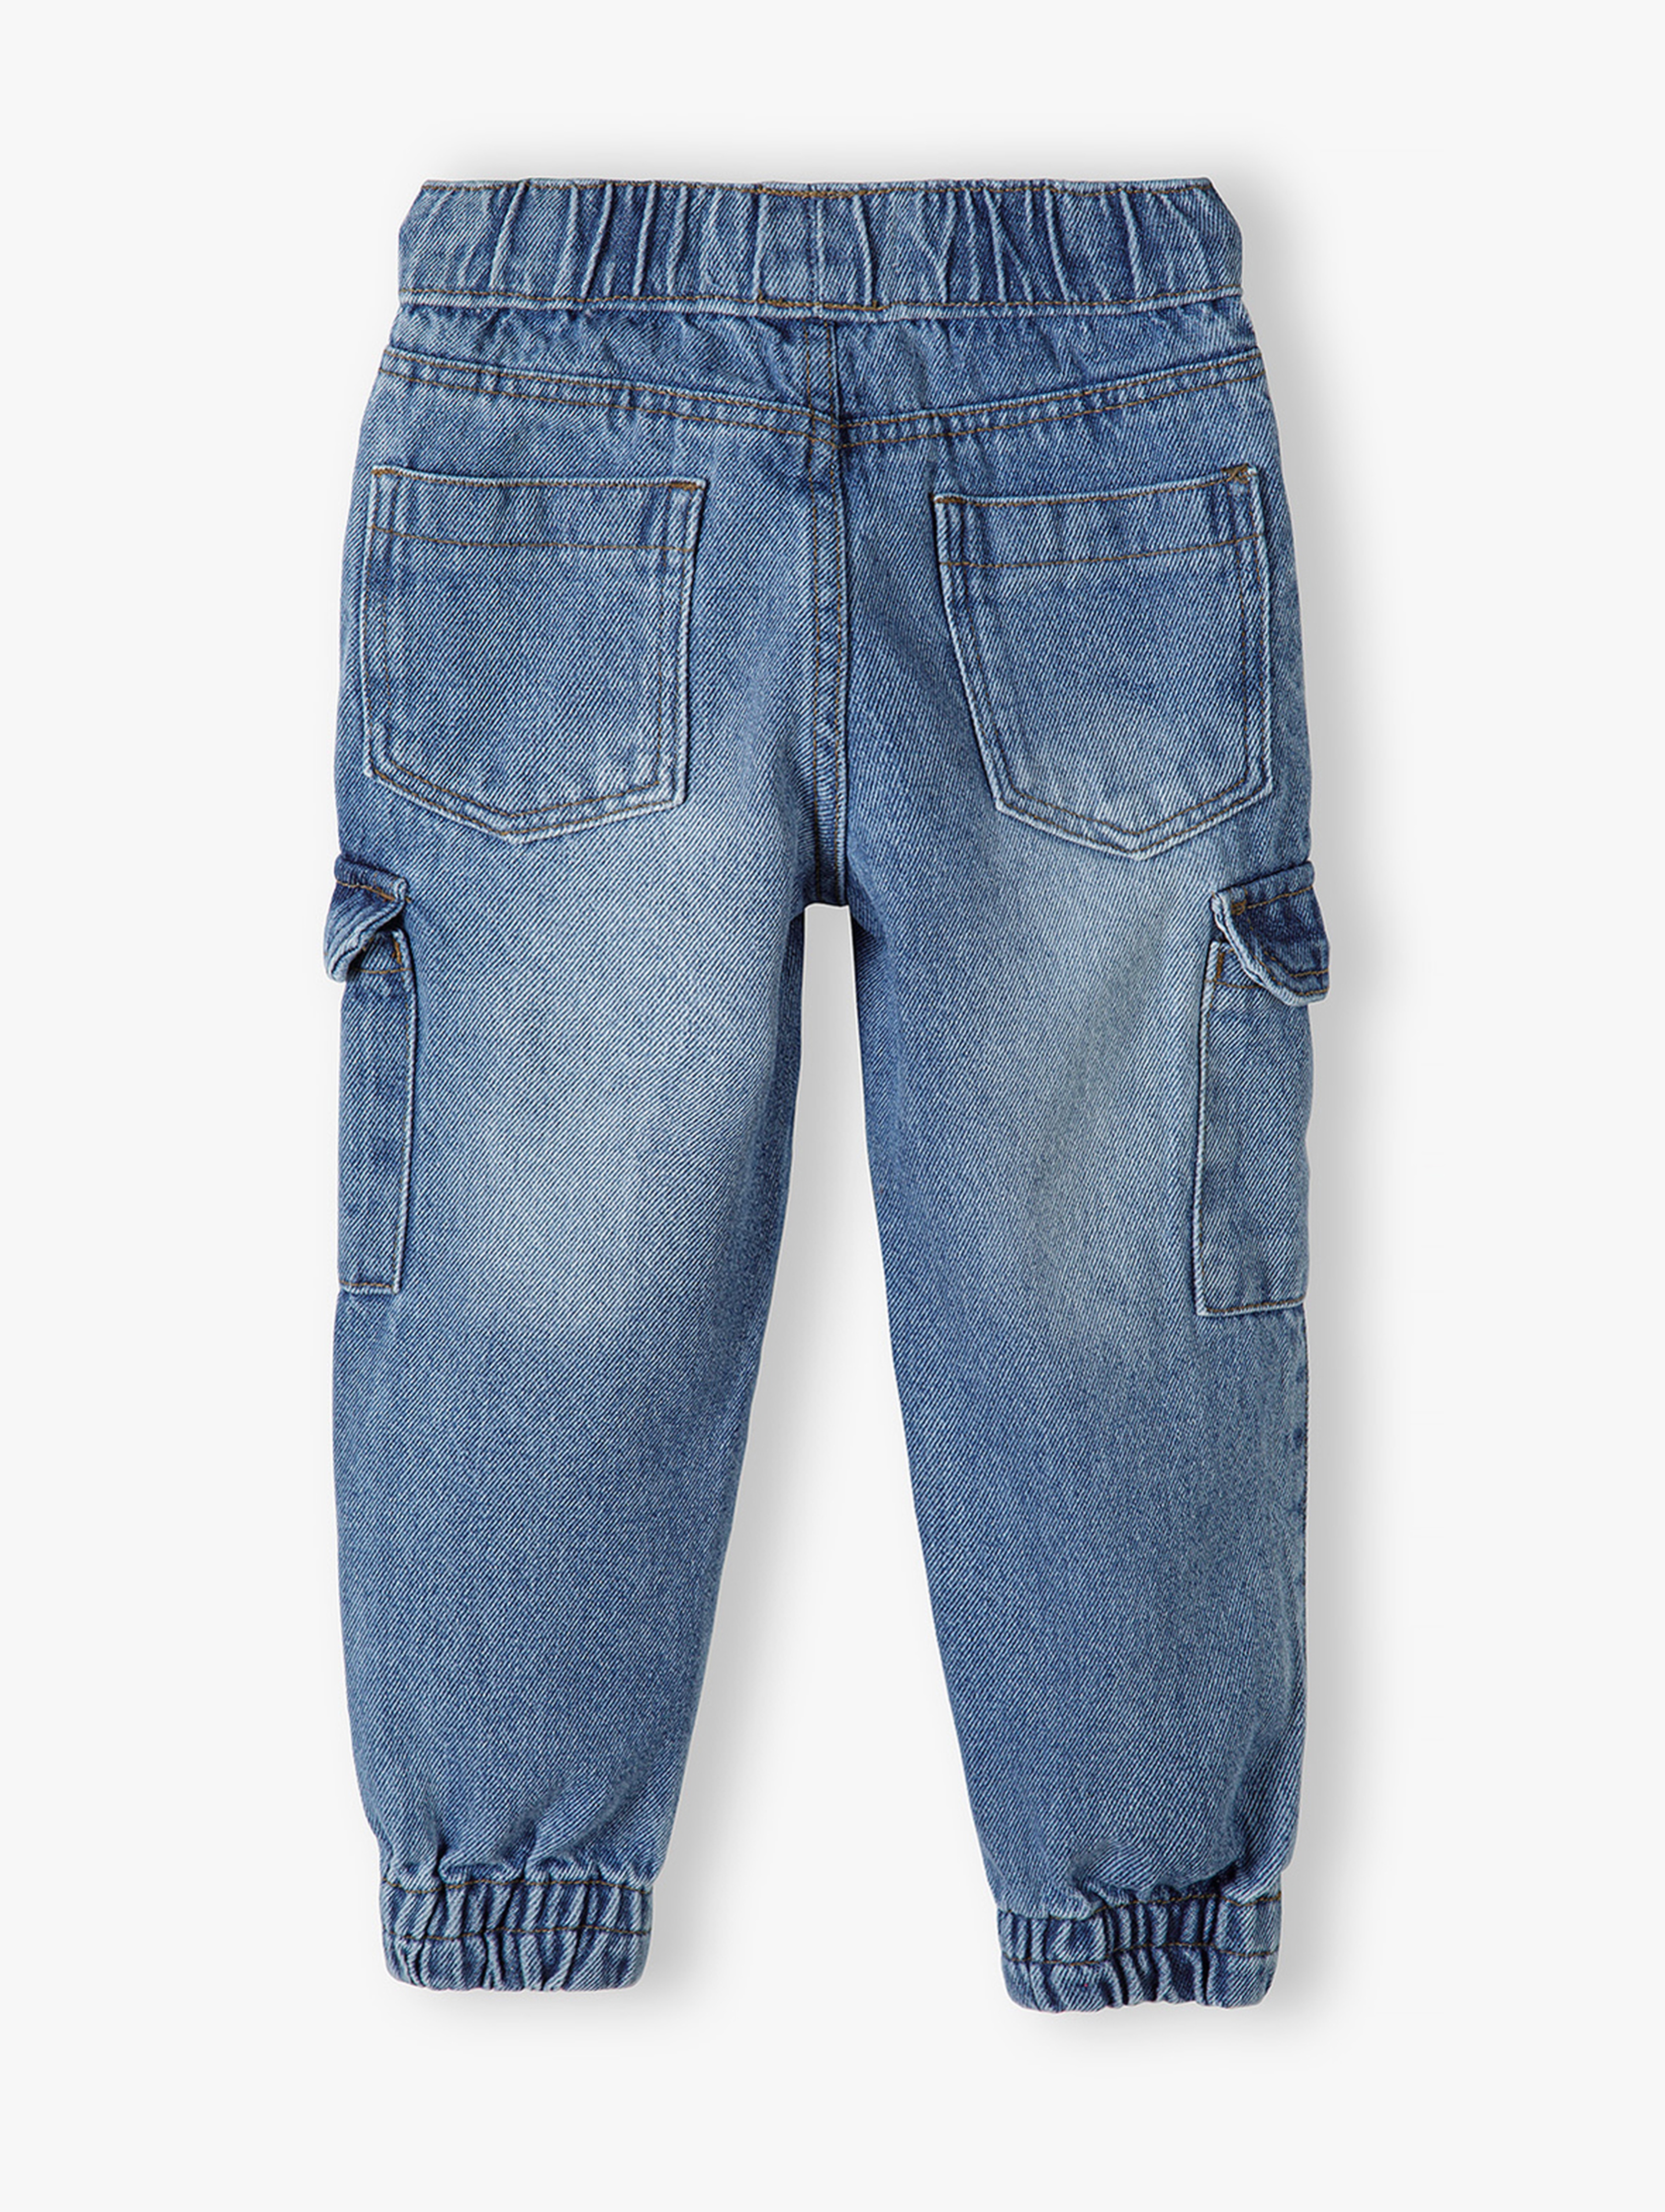 Spodnie jeansowe dla chłopca z naszywkami